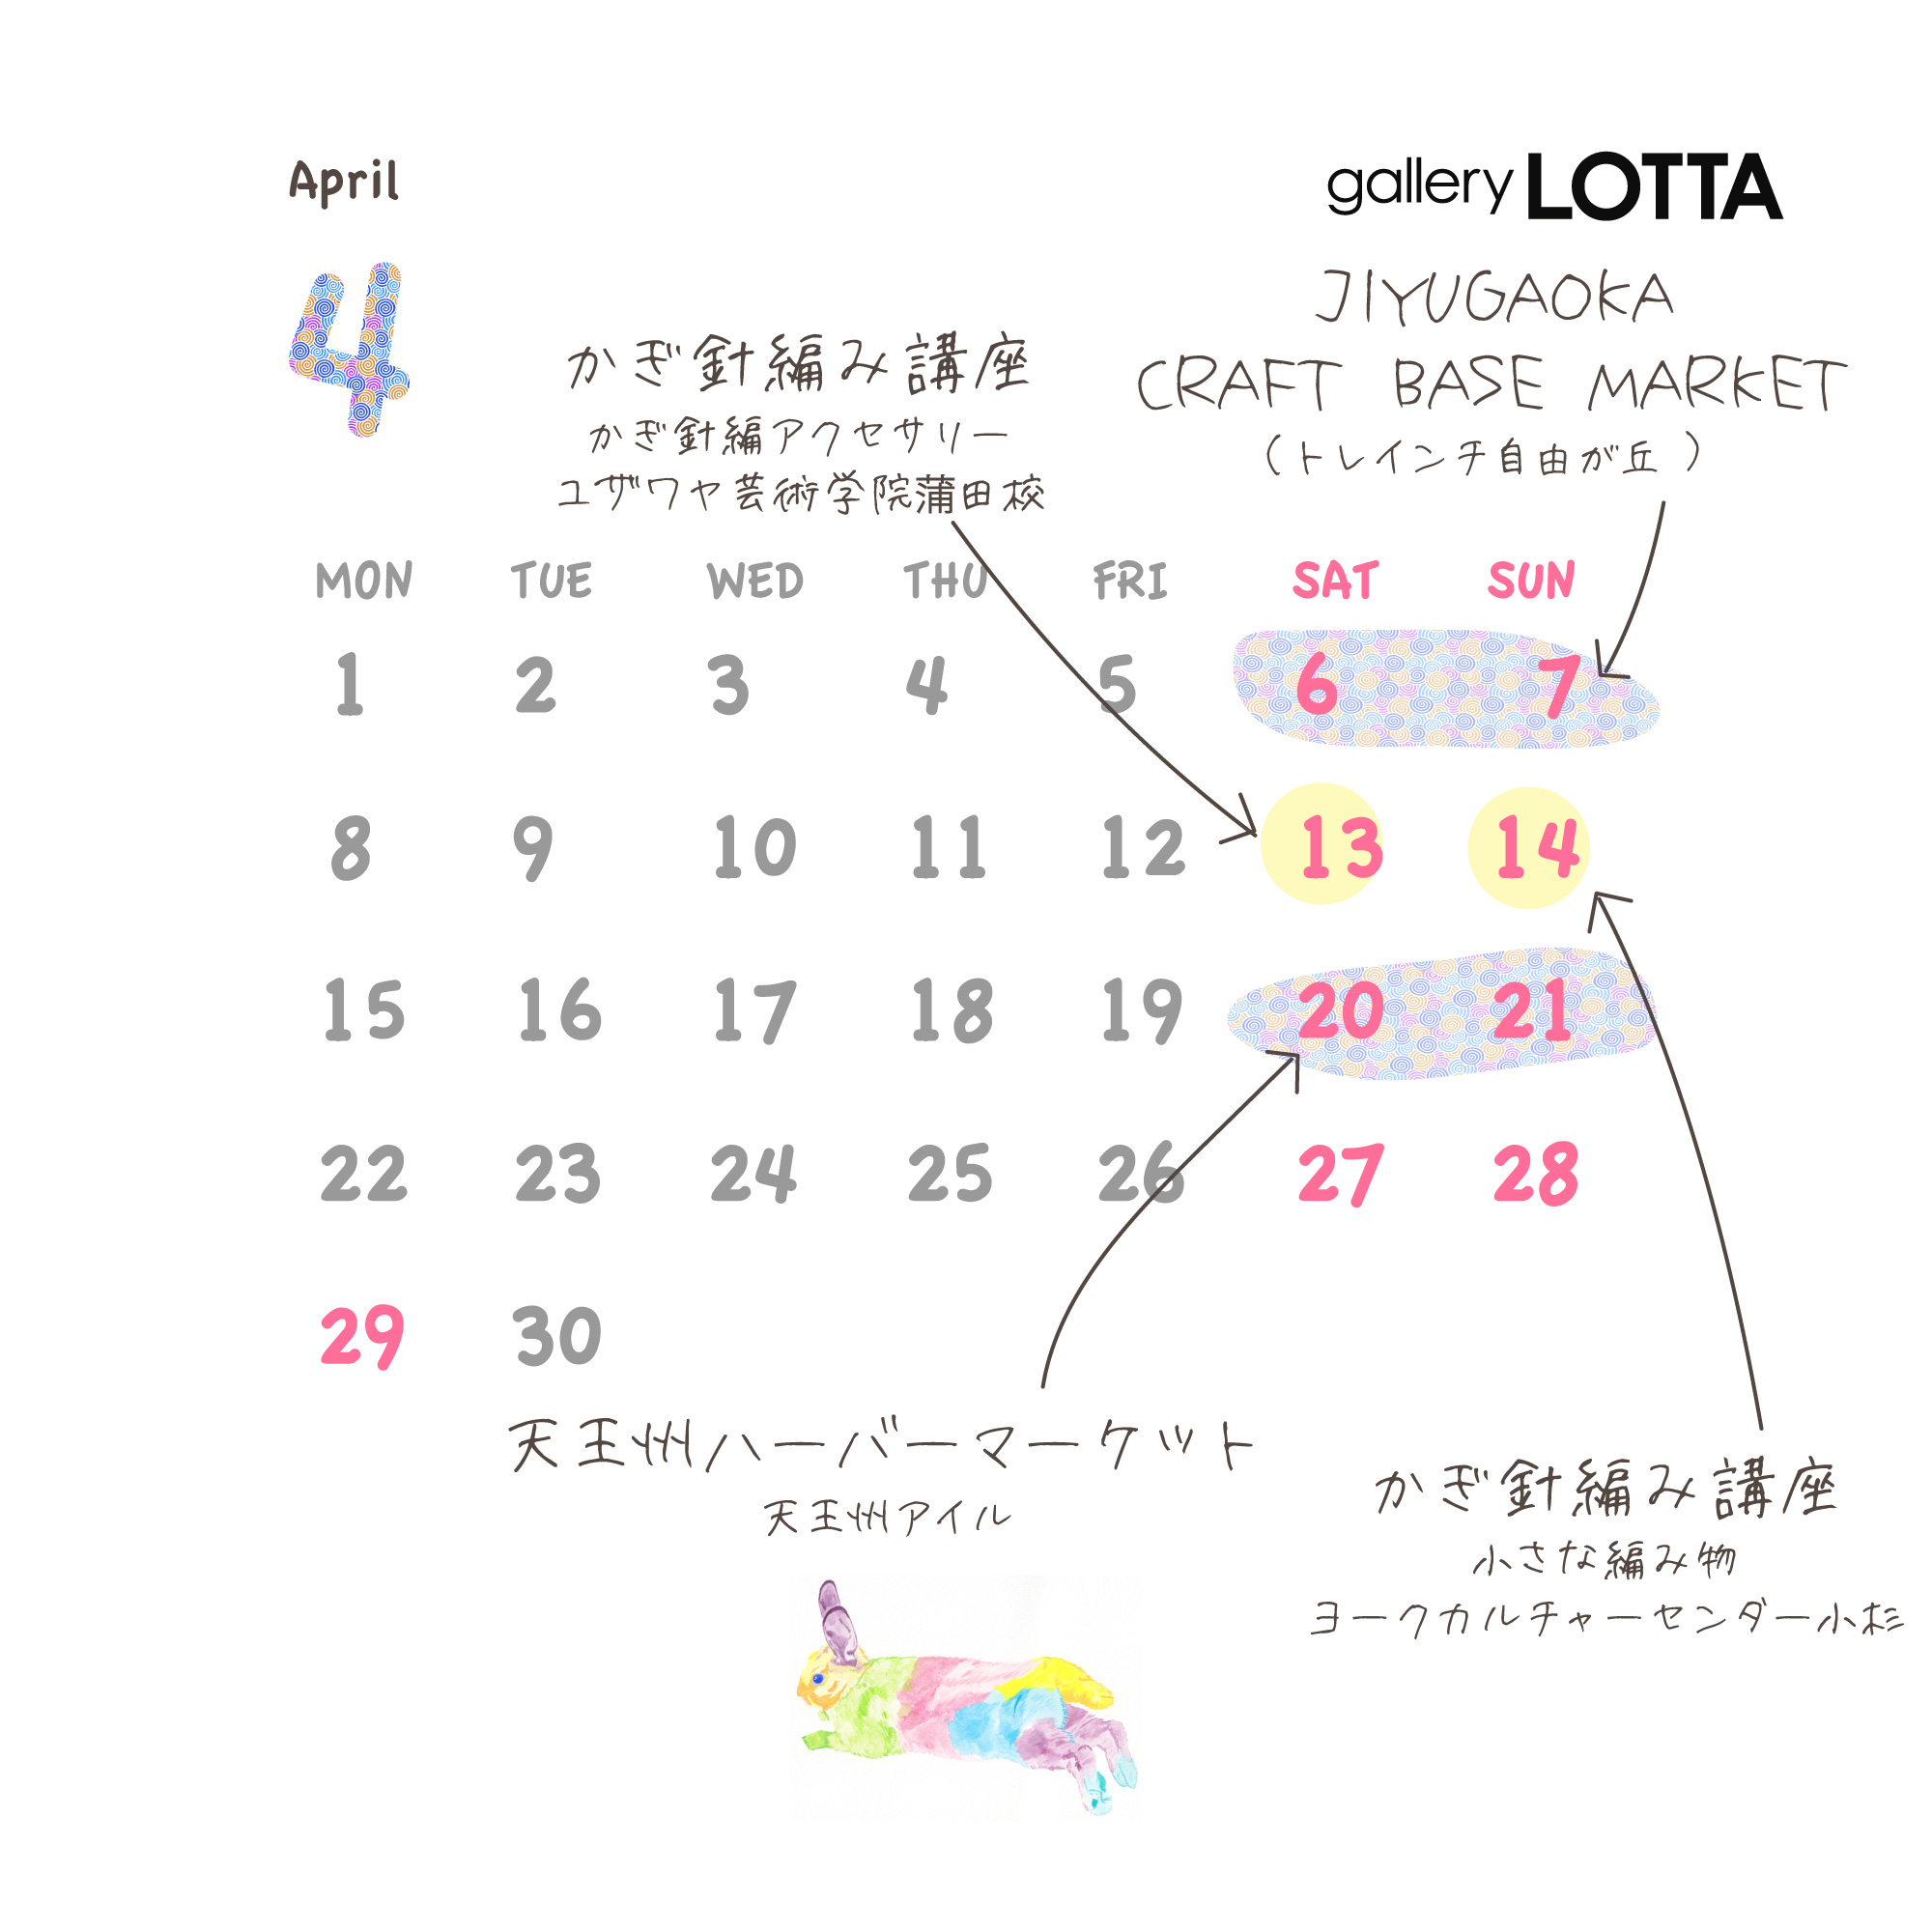 4月のイベントカレンダー